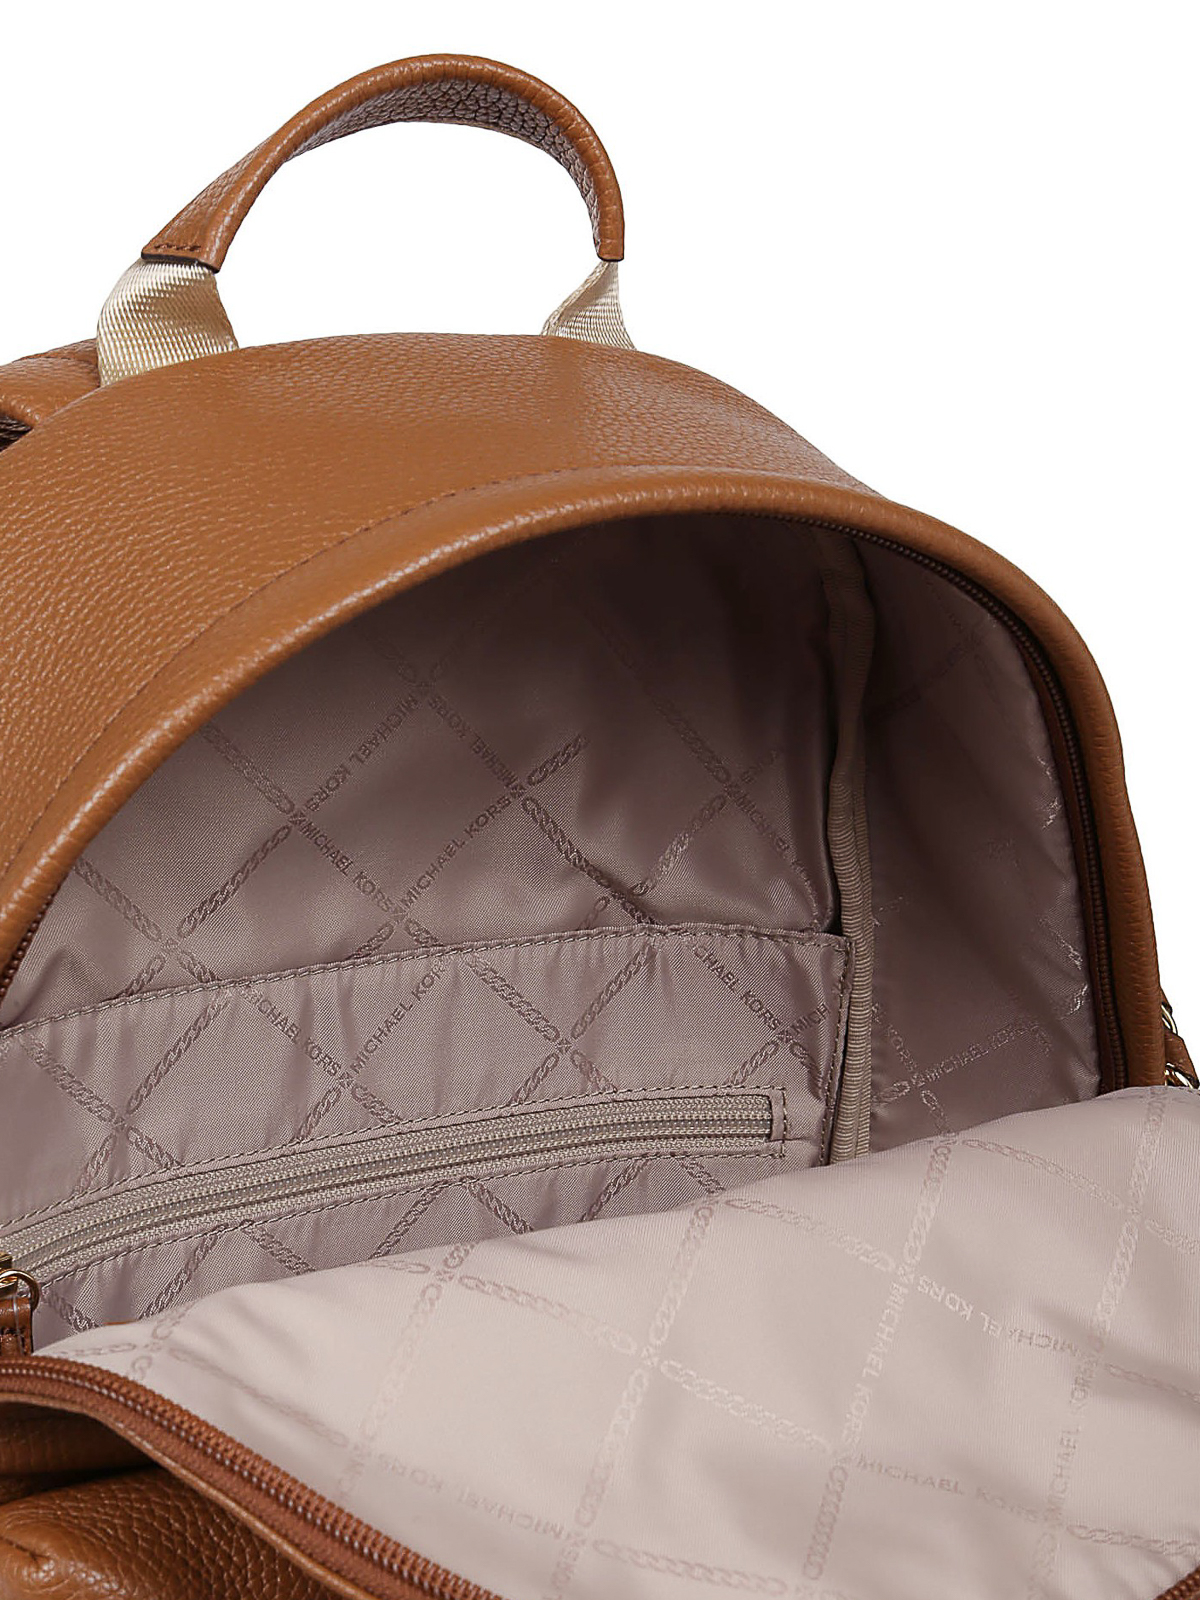 Shop Michael Kors Backpacks for Women